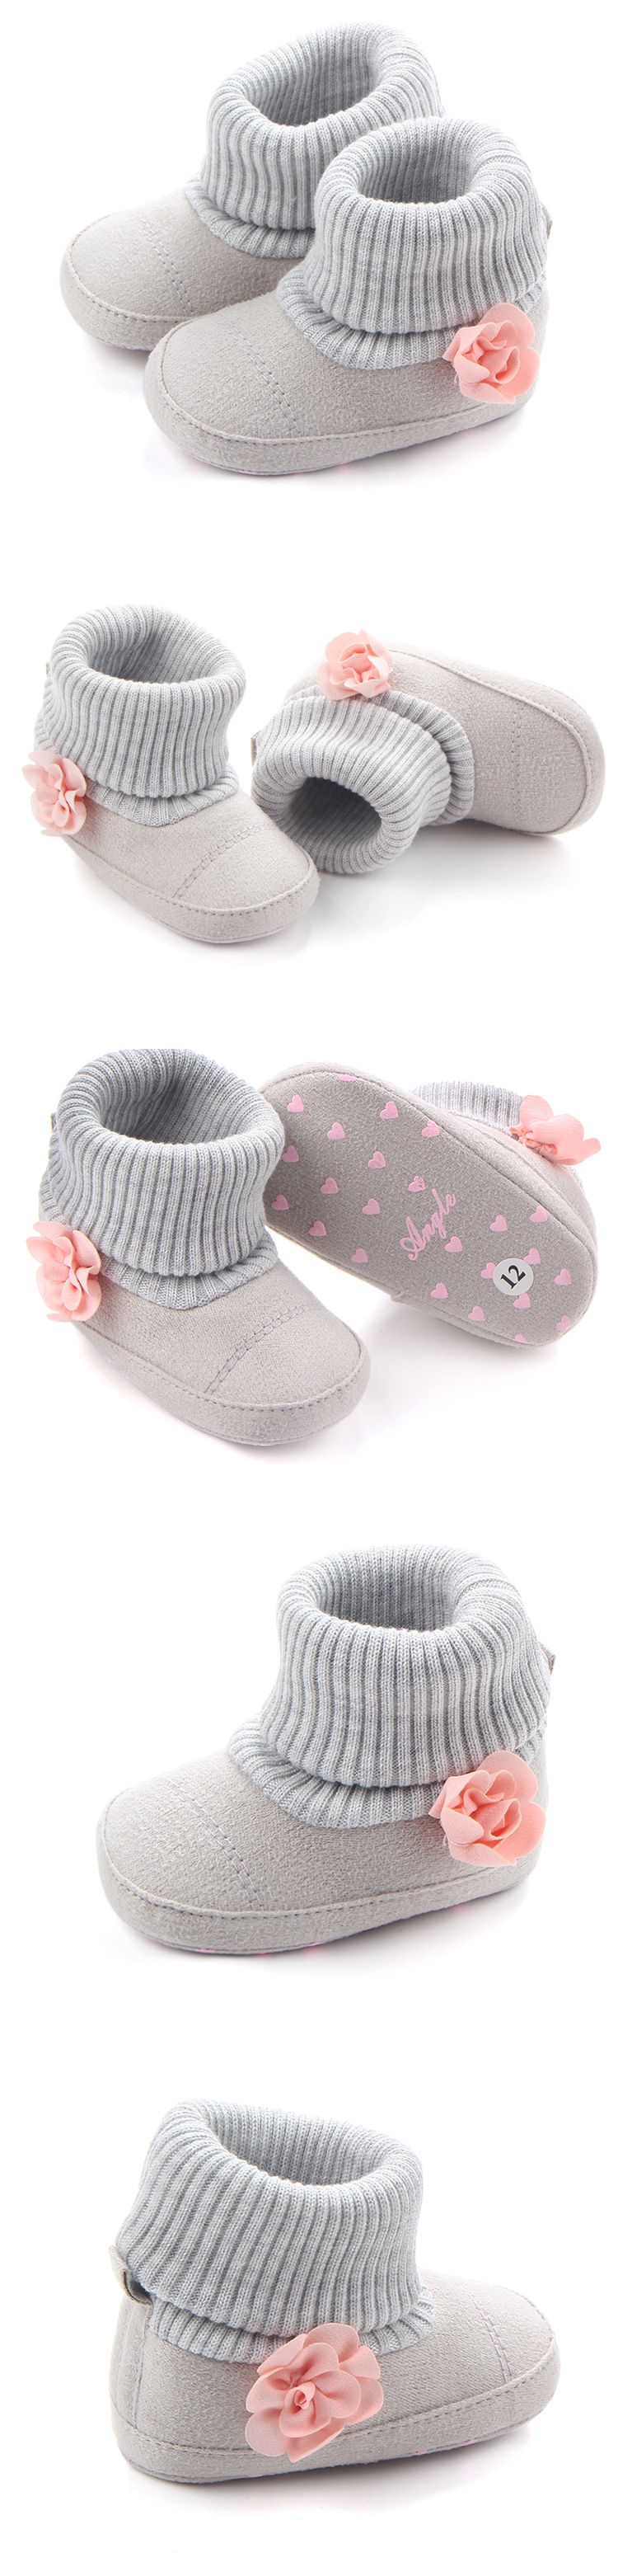 Chaussures bébé en coton - Ref 3436745 Image 16